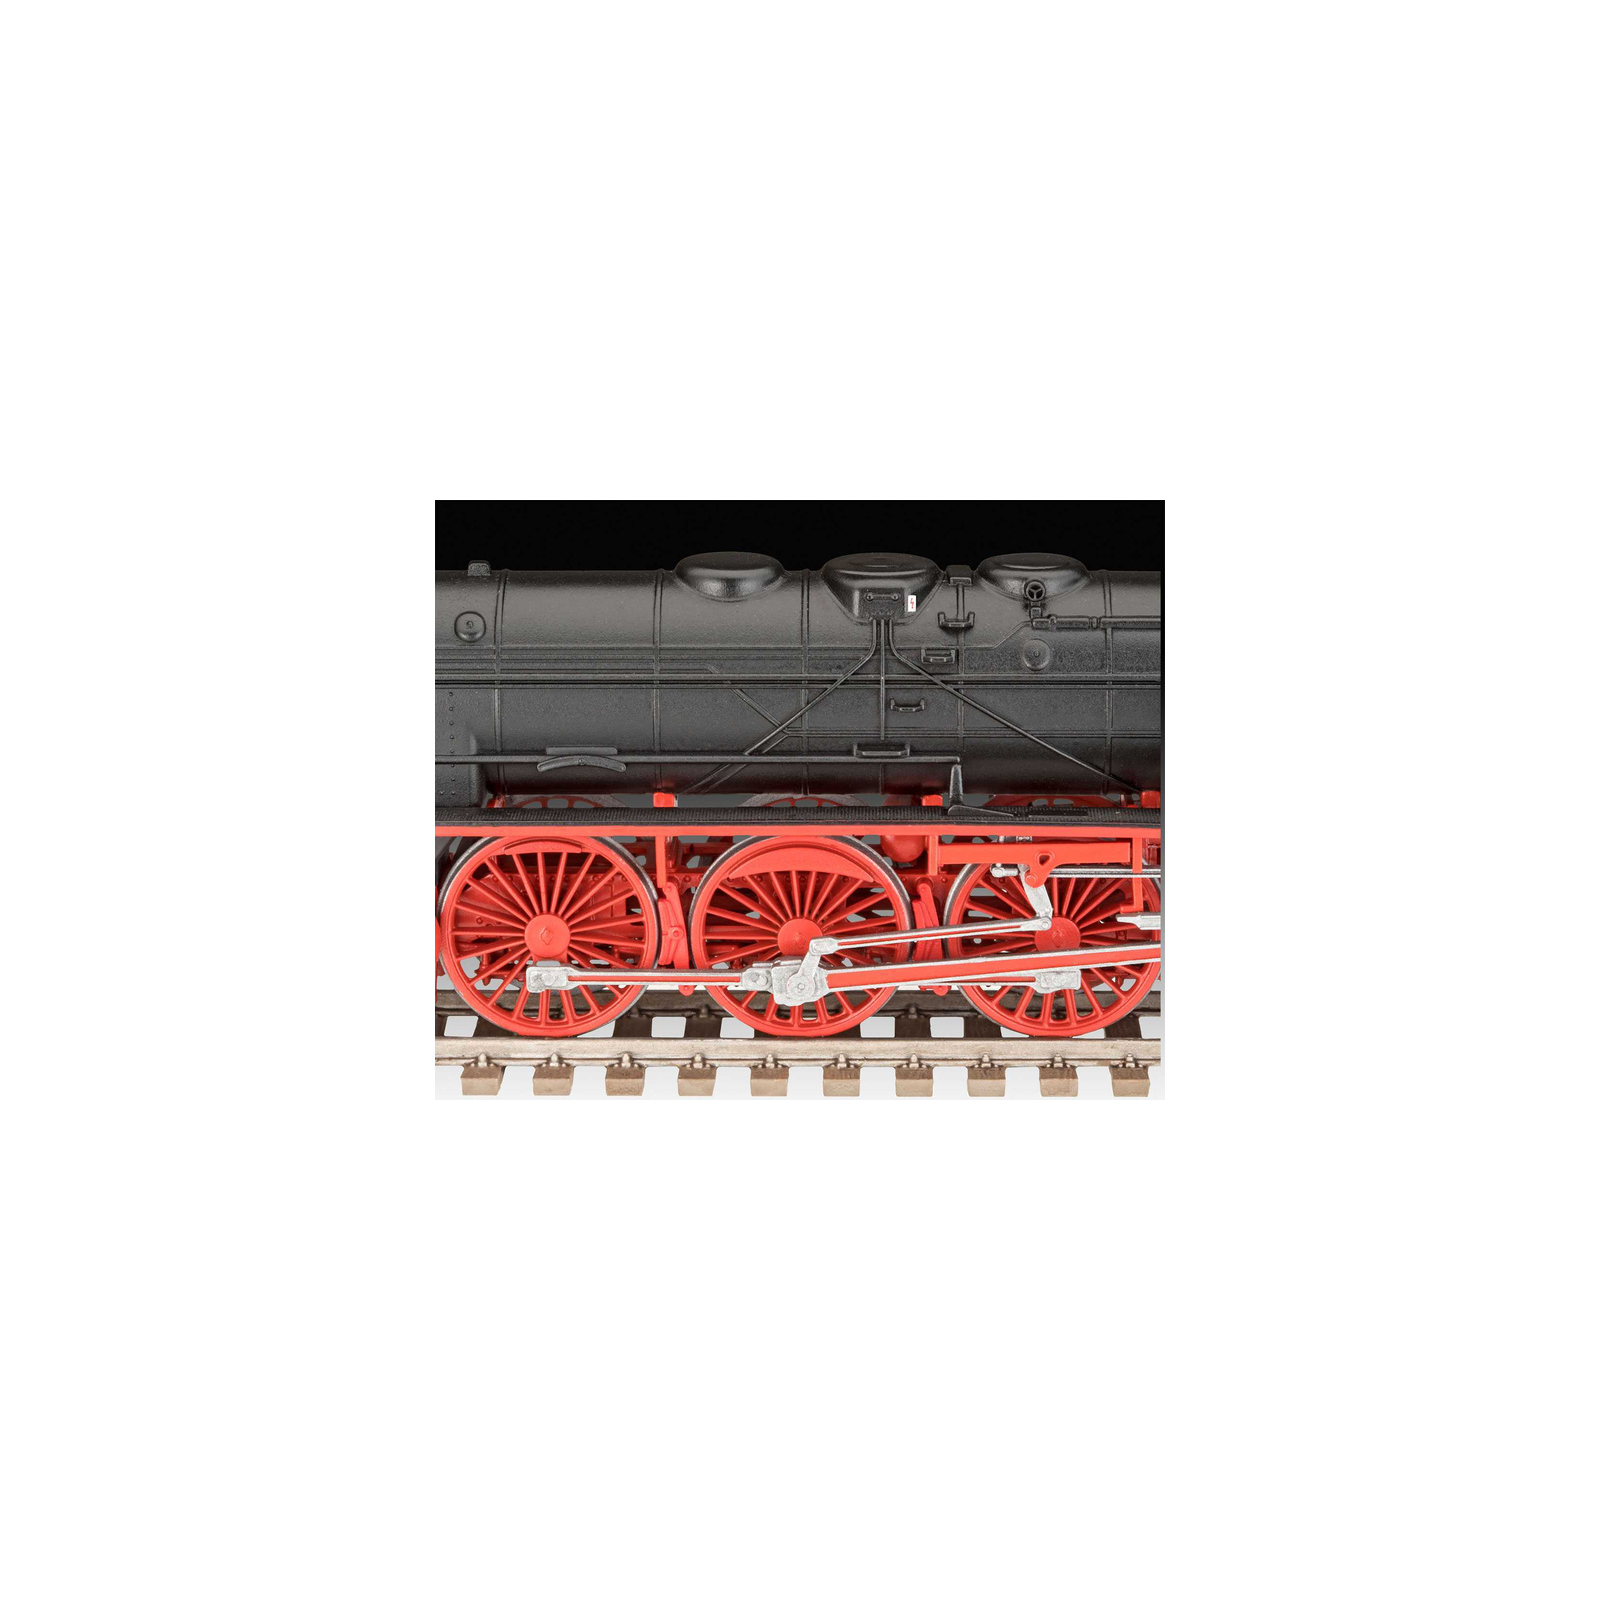 Сборная модель Revell Экспресс локомотив BR01 с тендером 2'2 T32 уровень 4,1:87 (RVL-02172) изображение 6